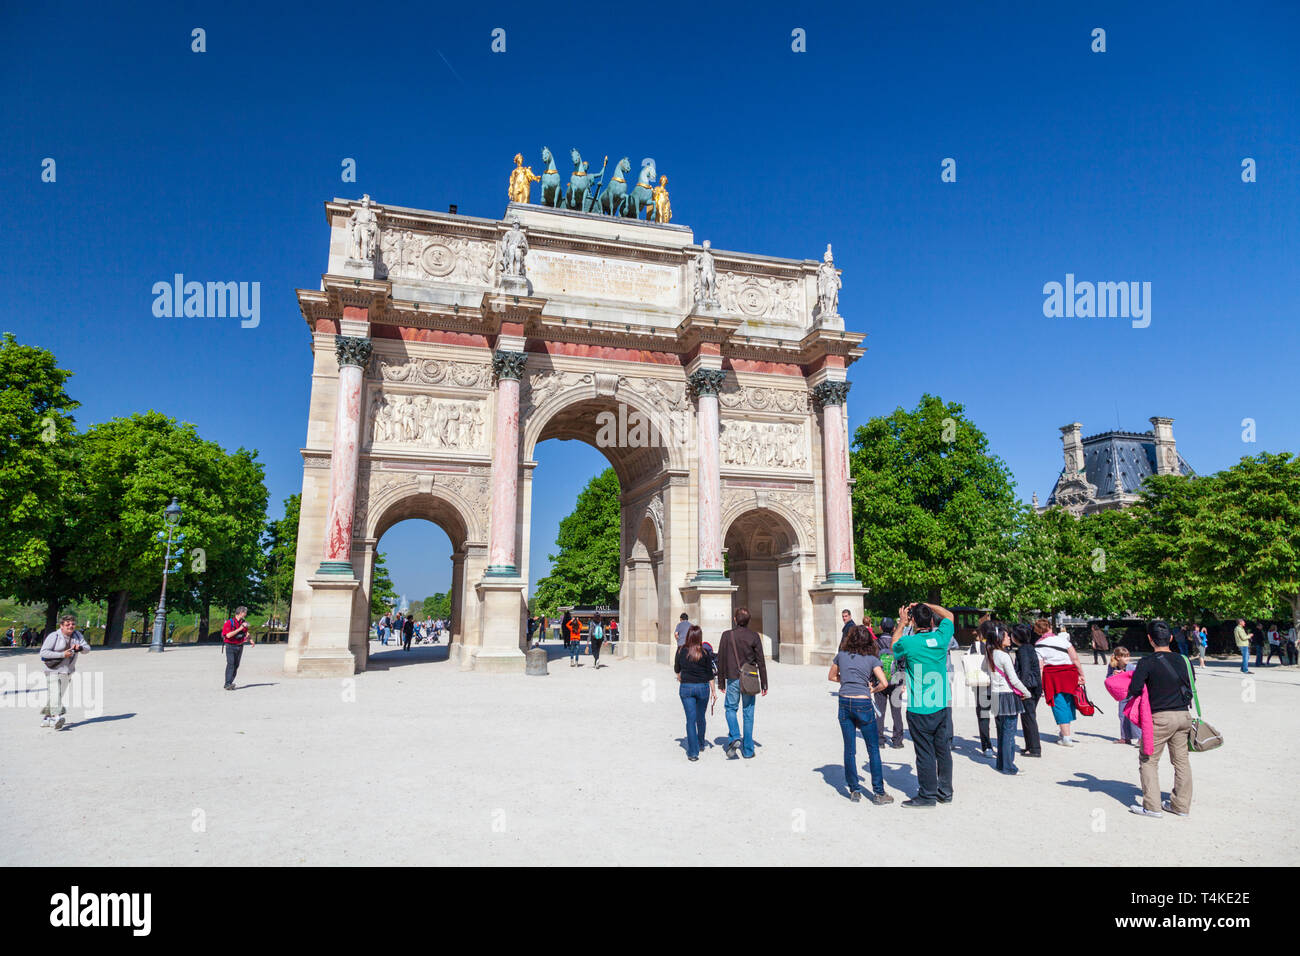 Il monumento dell'Arco di Trionfo del Carrousel in Place du Carrousel, Parigi Foto Stock